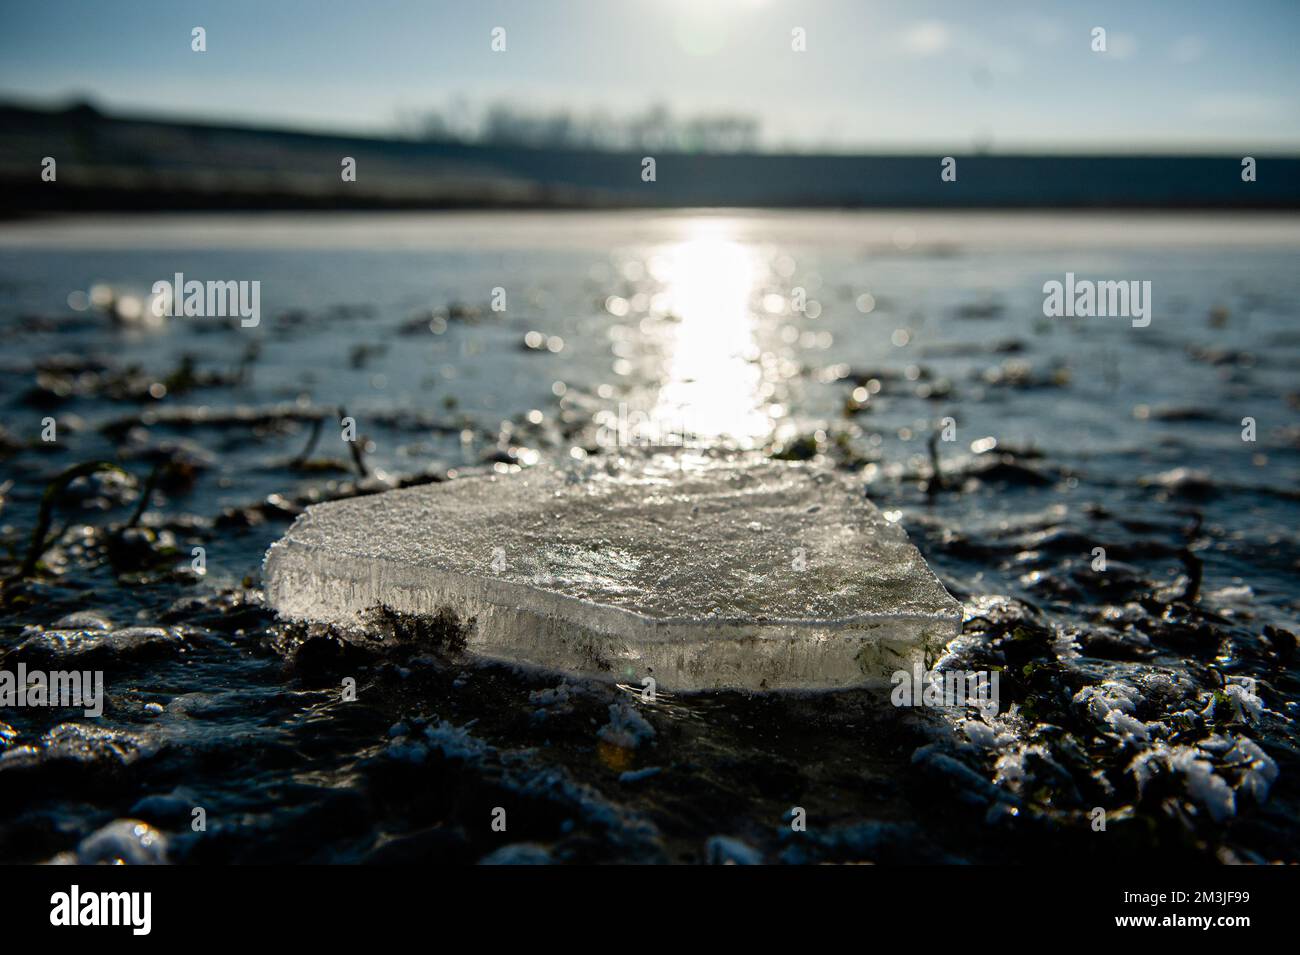 Nimègue, pays-Bas. 15th décembre 2022. Vue sur un morceau de glace à côté  d'un lac gelé. Après trois jours de températures inférieures à zéro  (environ -7 degrés Celsius la nuit), l'eau de